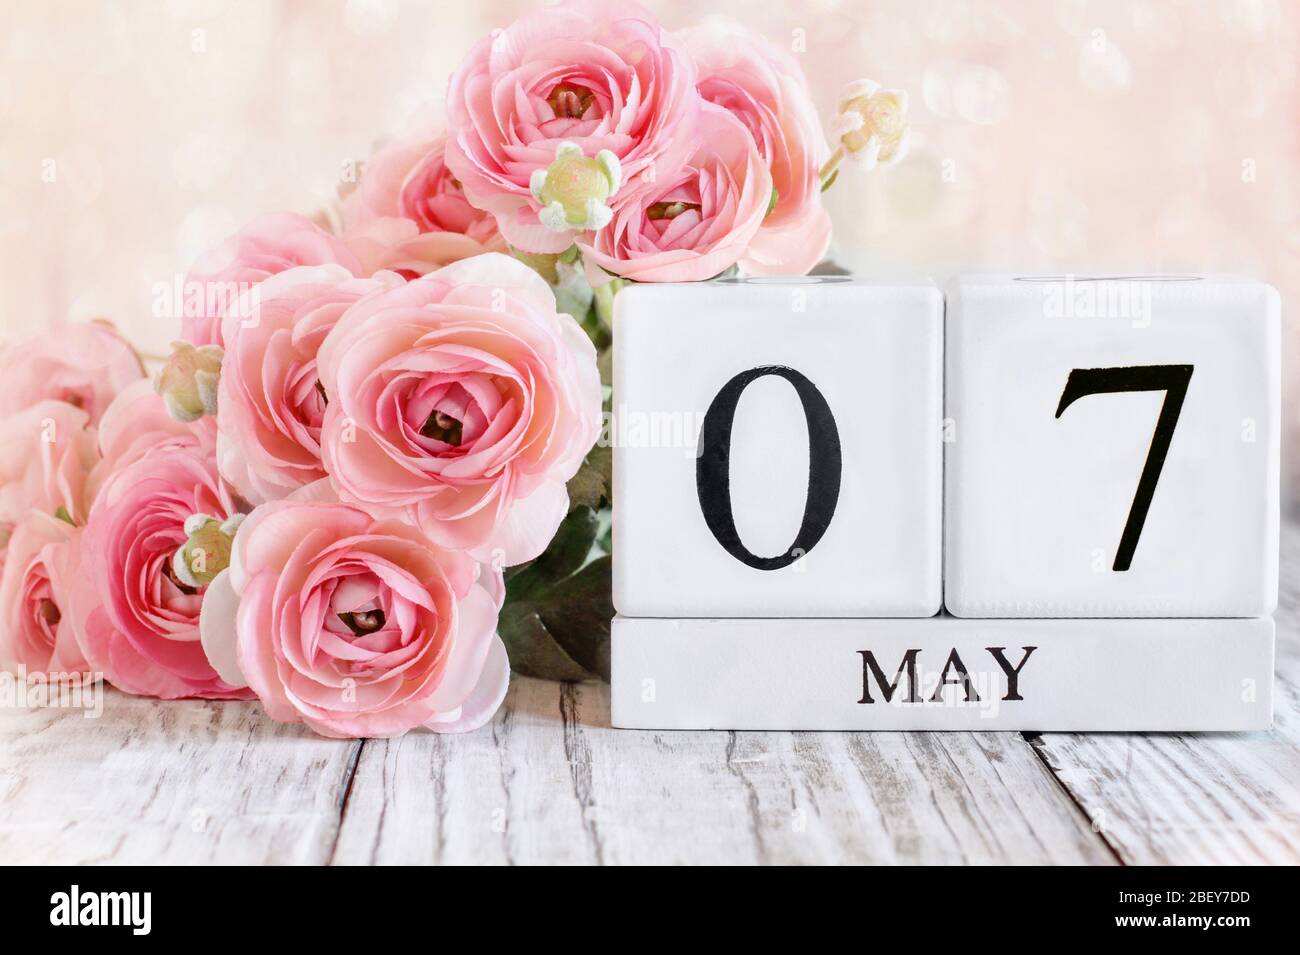 Blocs de calendrier en bois blanc générique avec la date du 7 mai et fleurs roses de ranunculus sur une table en bois. Mise au point sélective avec fond flou. Banque D'Images